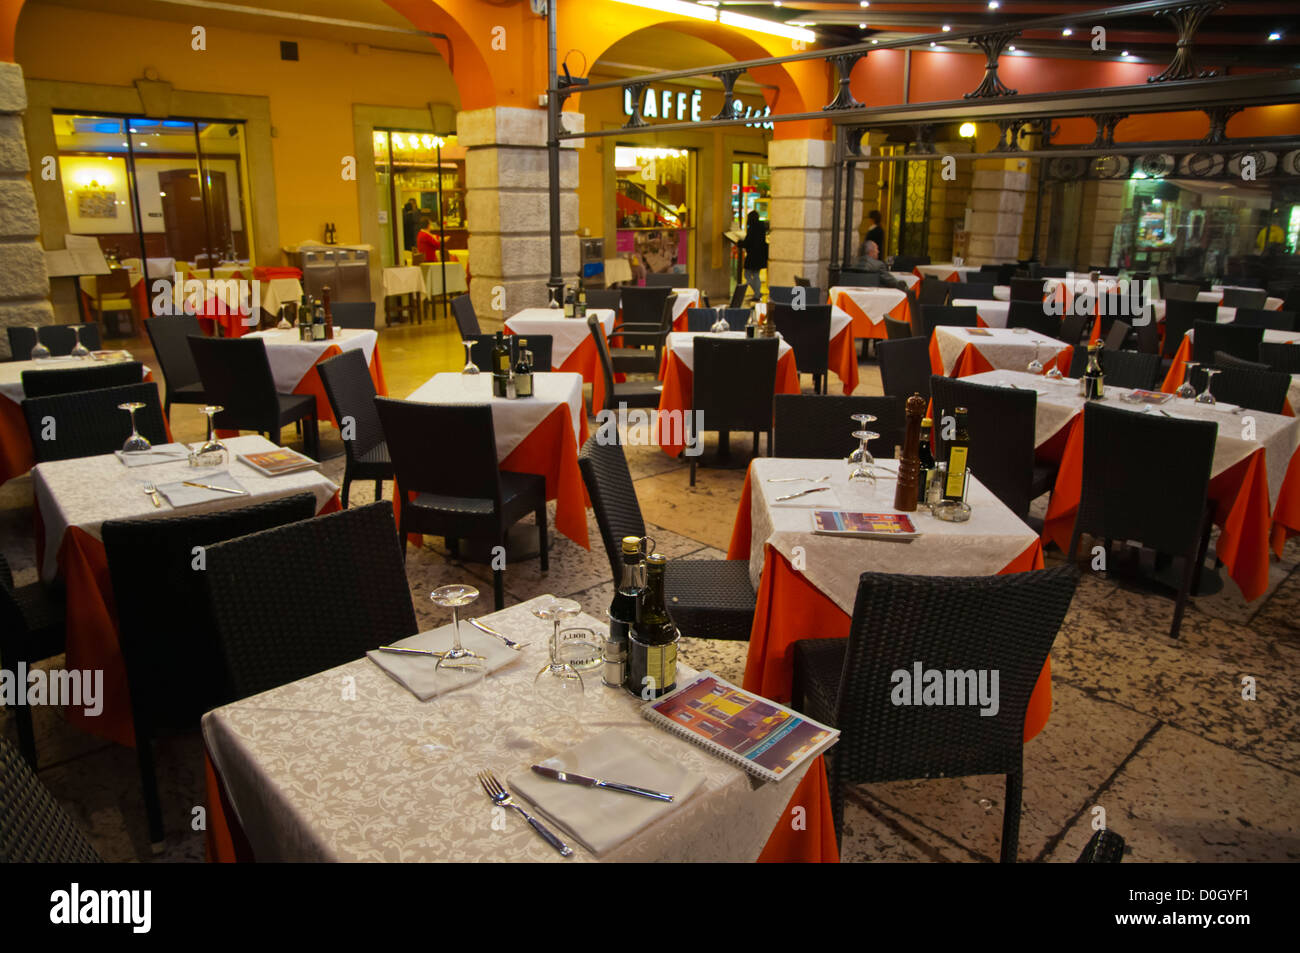 Las mesas del restaurante Piazza Bra plaza central de la ciudad de Verona Véneto Italia del norte de Europa Foto de stock